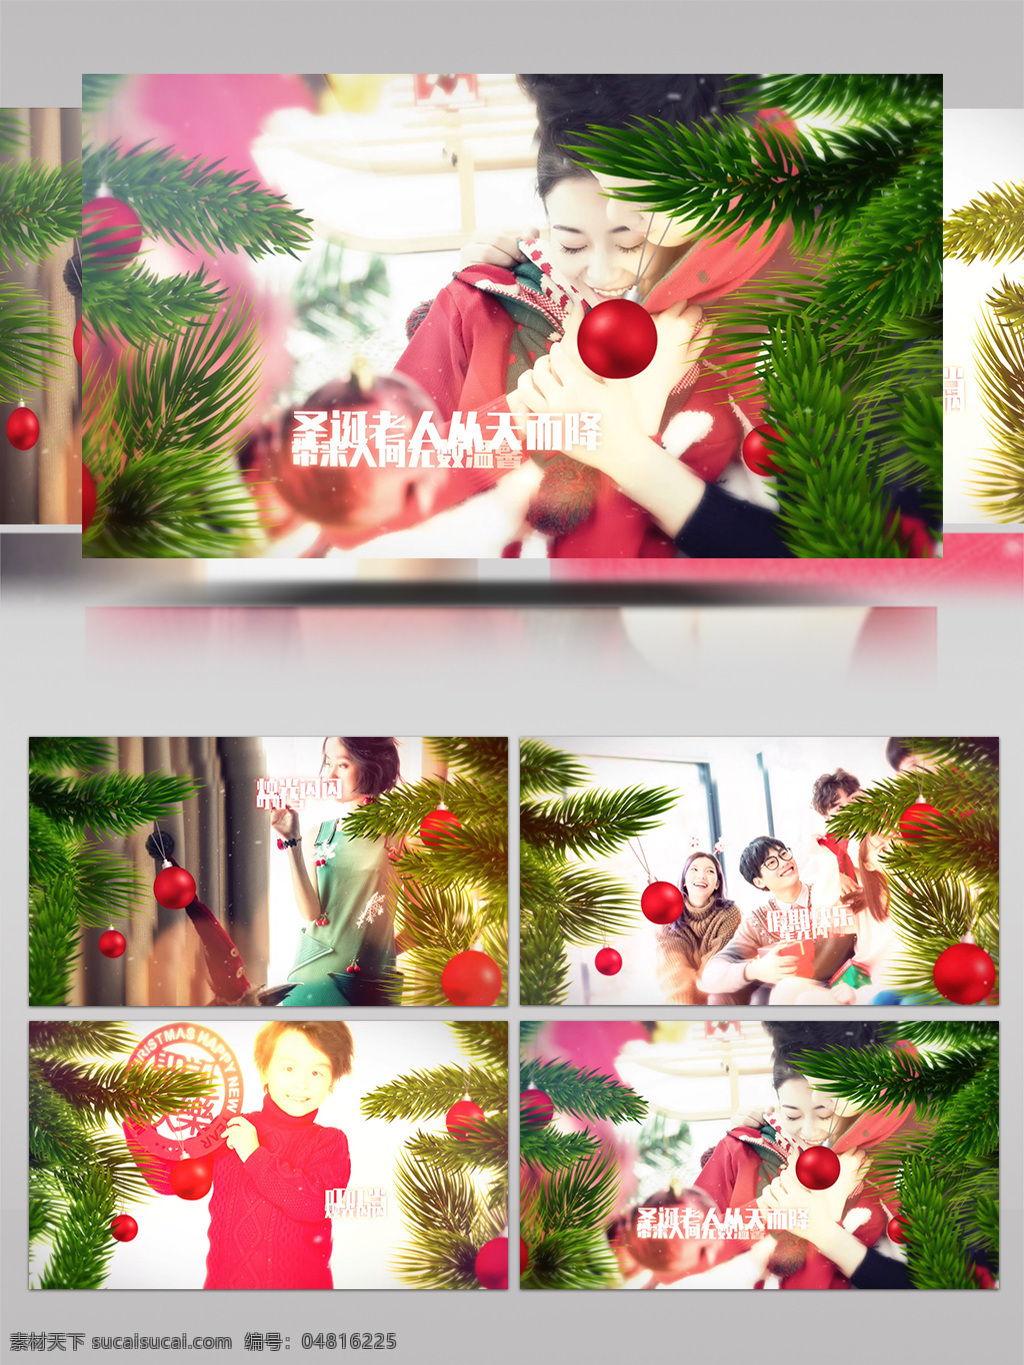 圣诞节 家庭 相册 纪念 节日 ae 模板 包装 雪景 雪花 片头 片尾 周年 日 展示 冰雪 麋鹿 圣诞老人